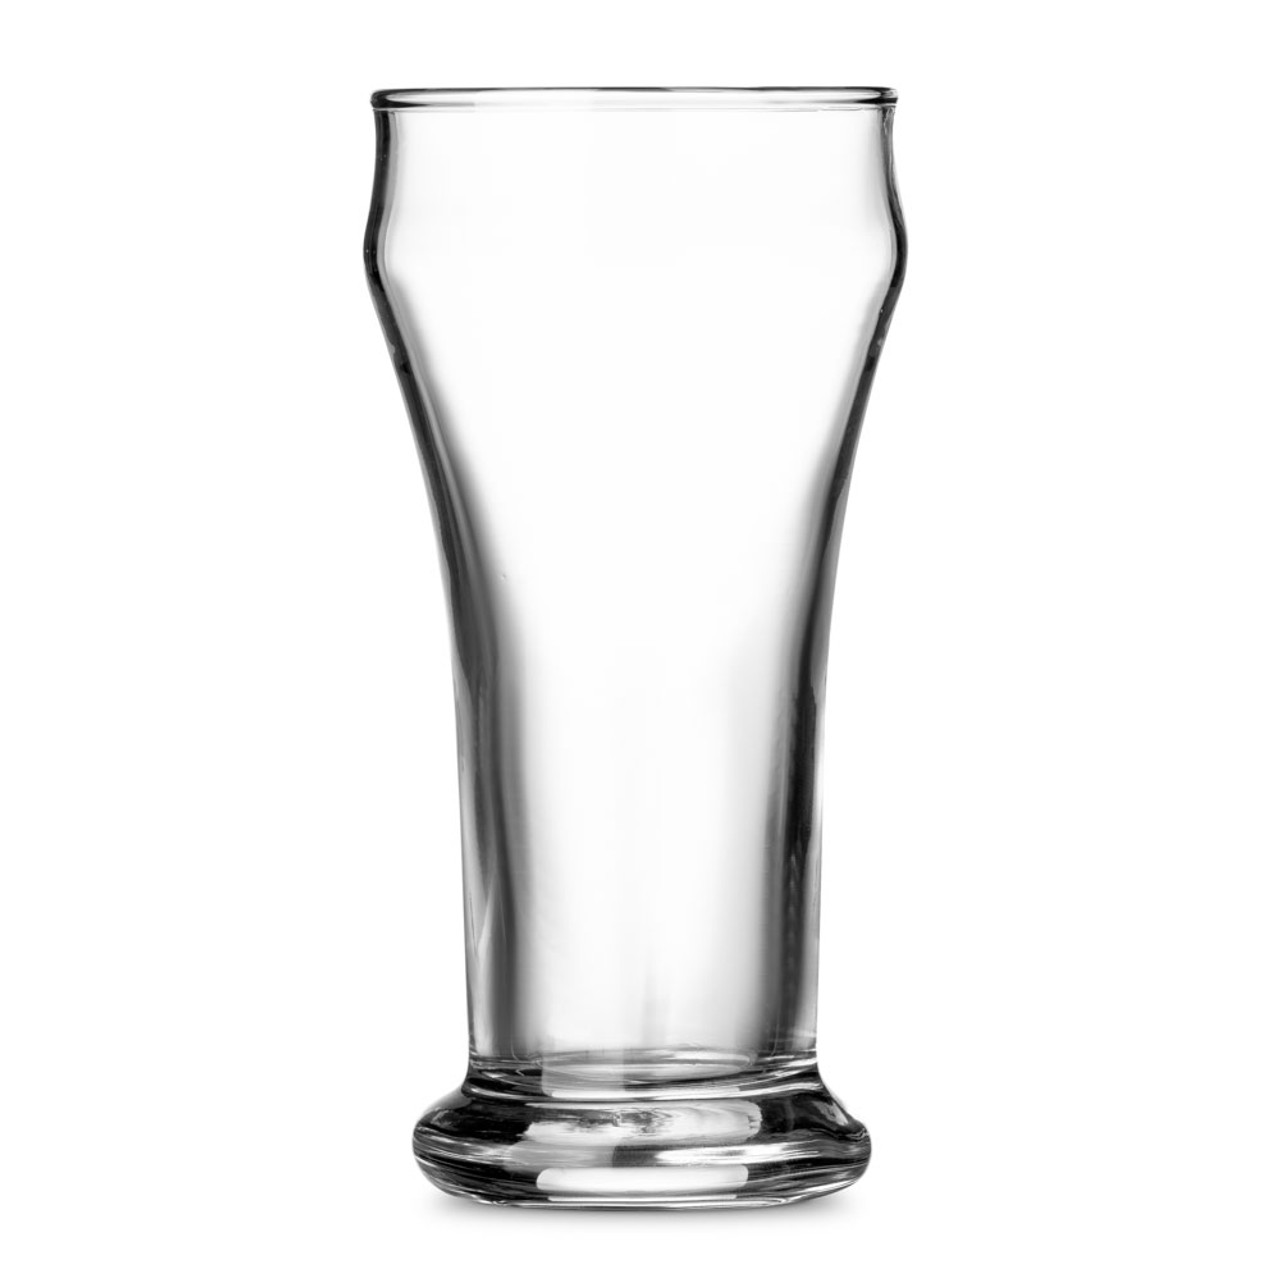 12 NEW 12 oz Clear Restaurant Bar Beer Pilsner Glasses 